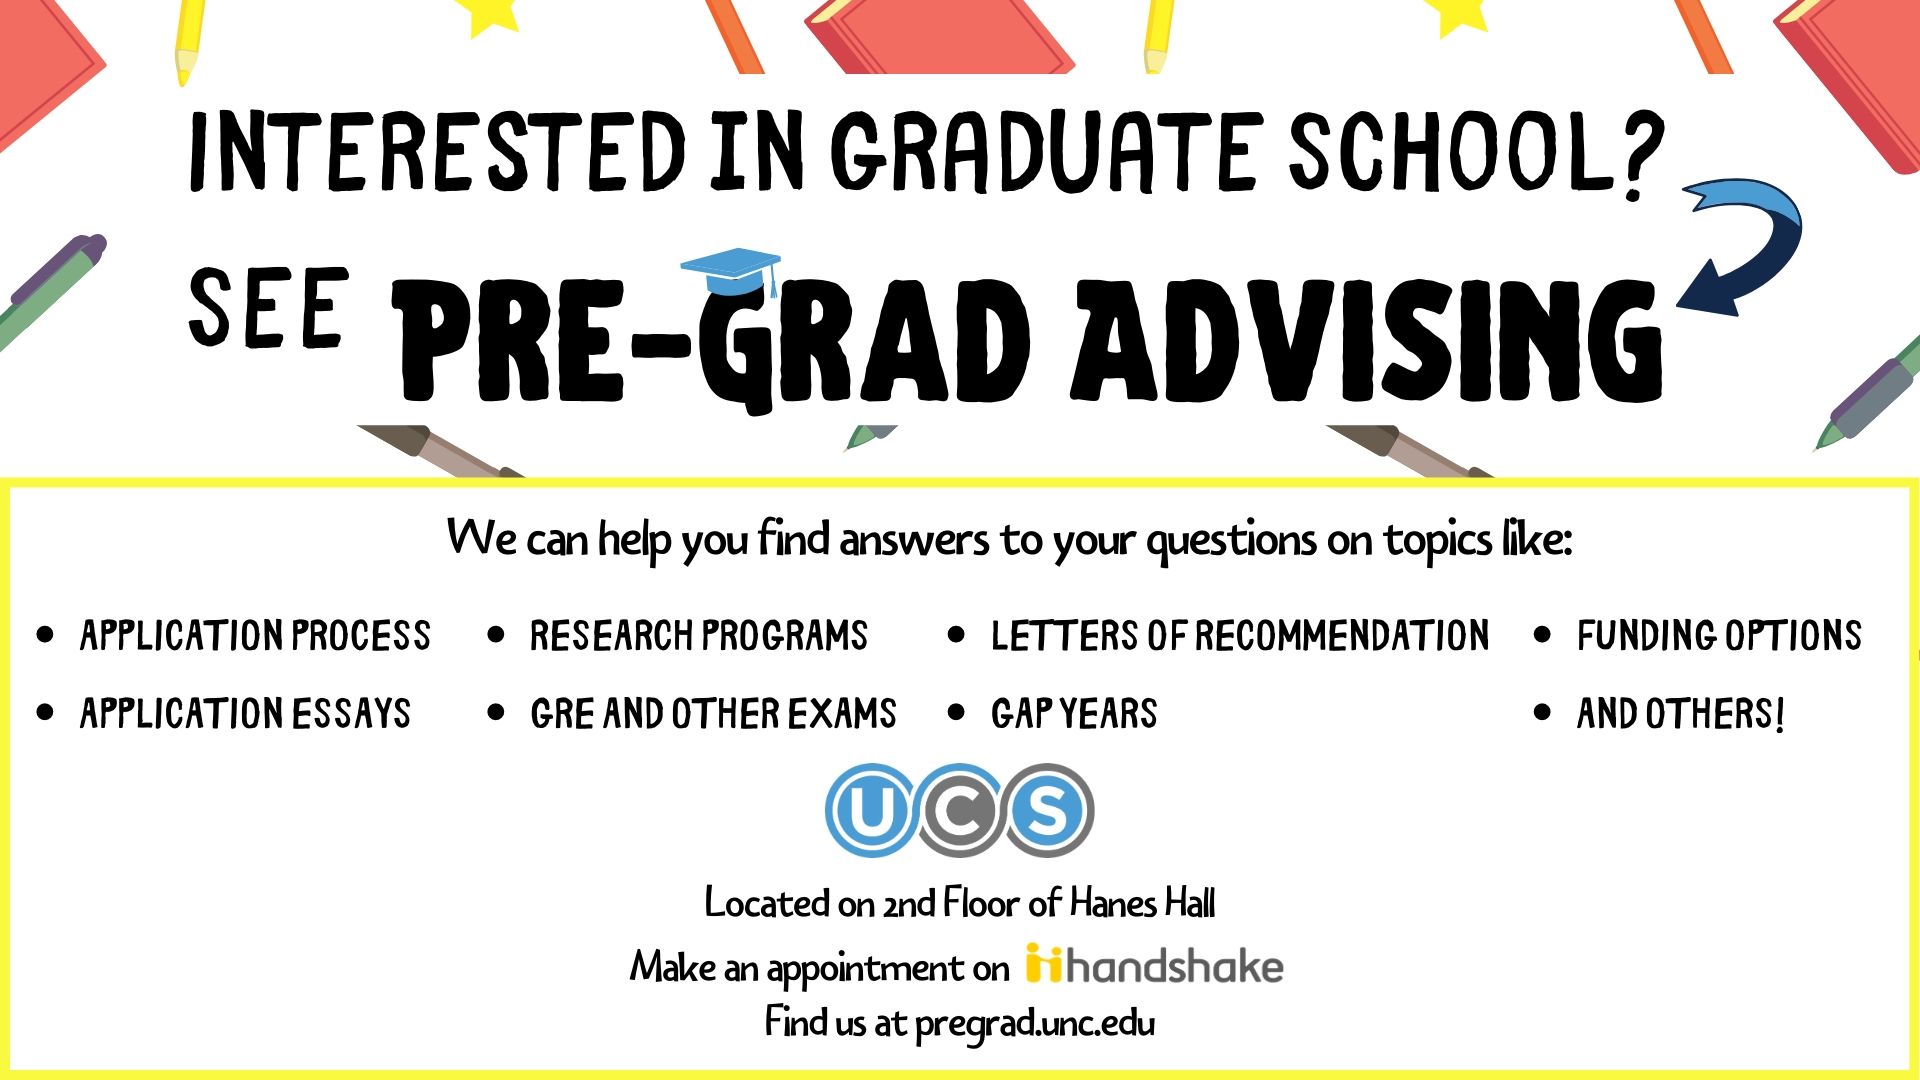 Interested in Graduate School? See Pre-Grad Advising